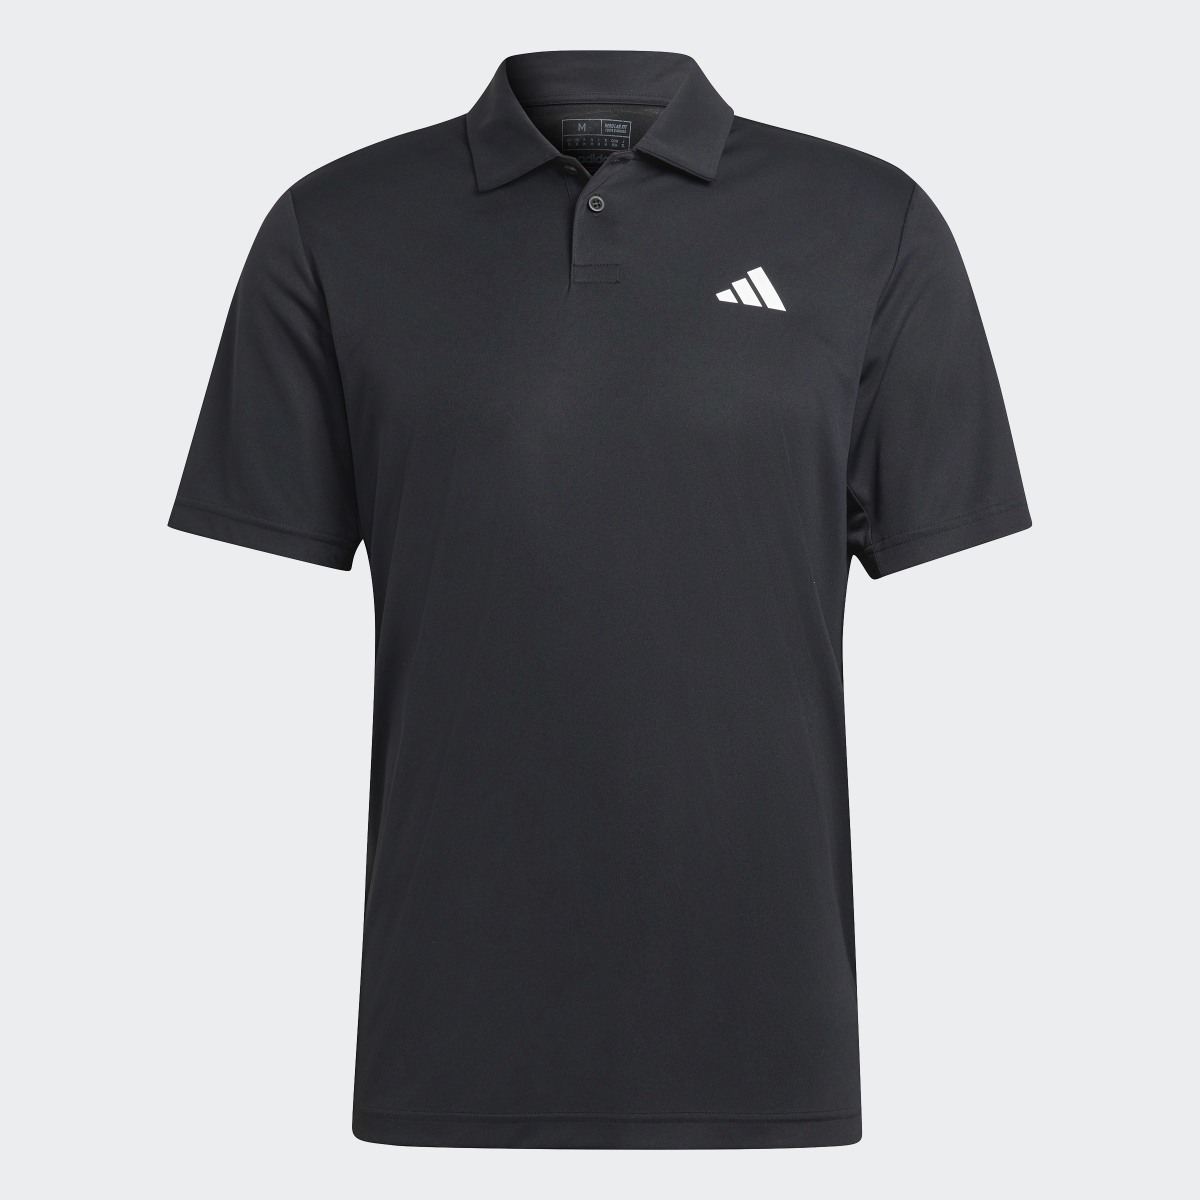 Adidas Club Tennis Poloshirt. 5